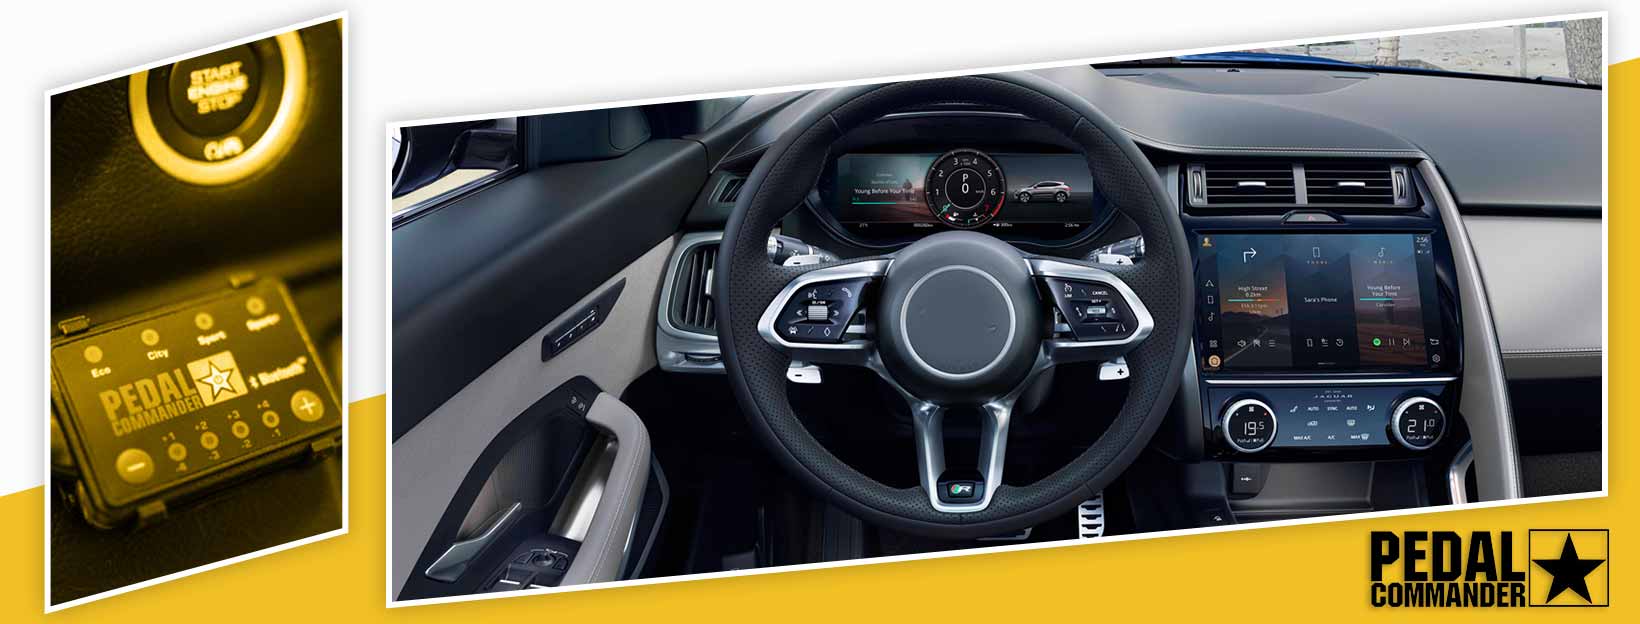 Pedal Commander for Jaguar E-Pace - interior